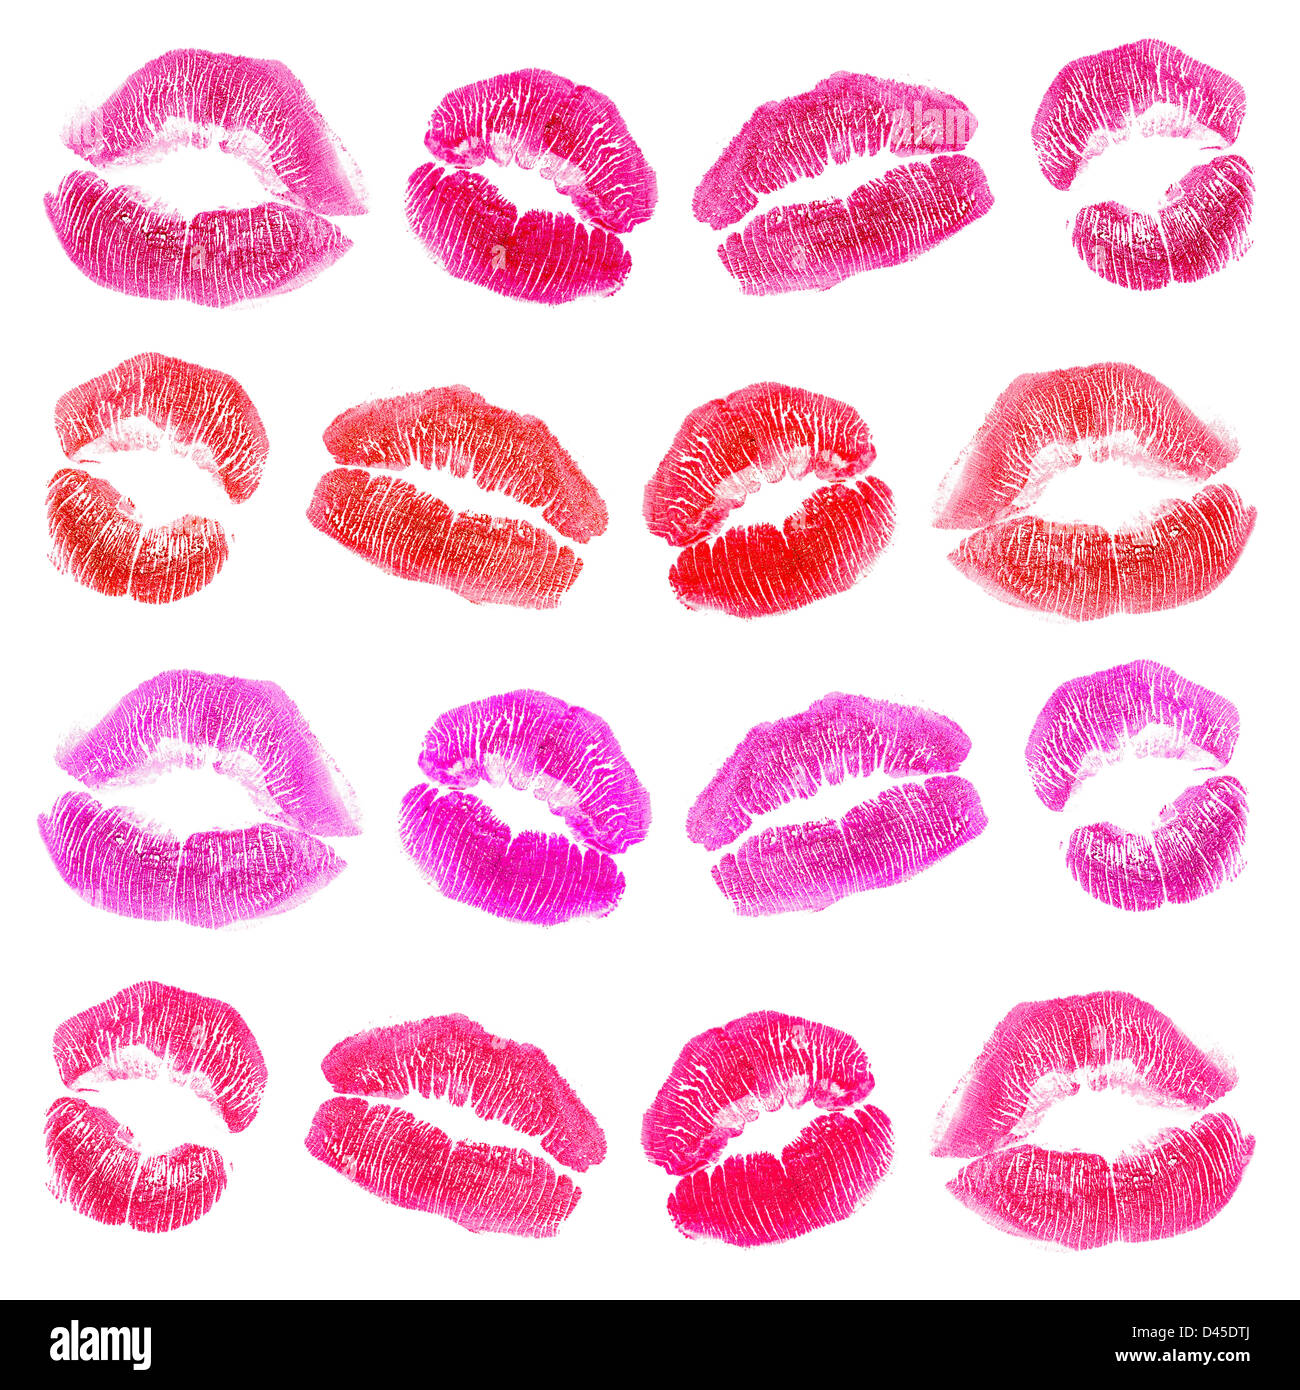 Lippenstift Marken gesetzt. Isoliert auf weißem Hintergrund. Stockfoto